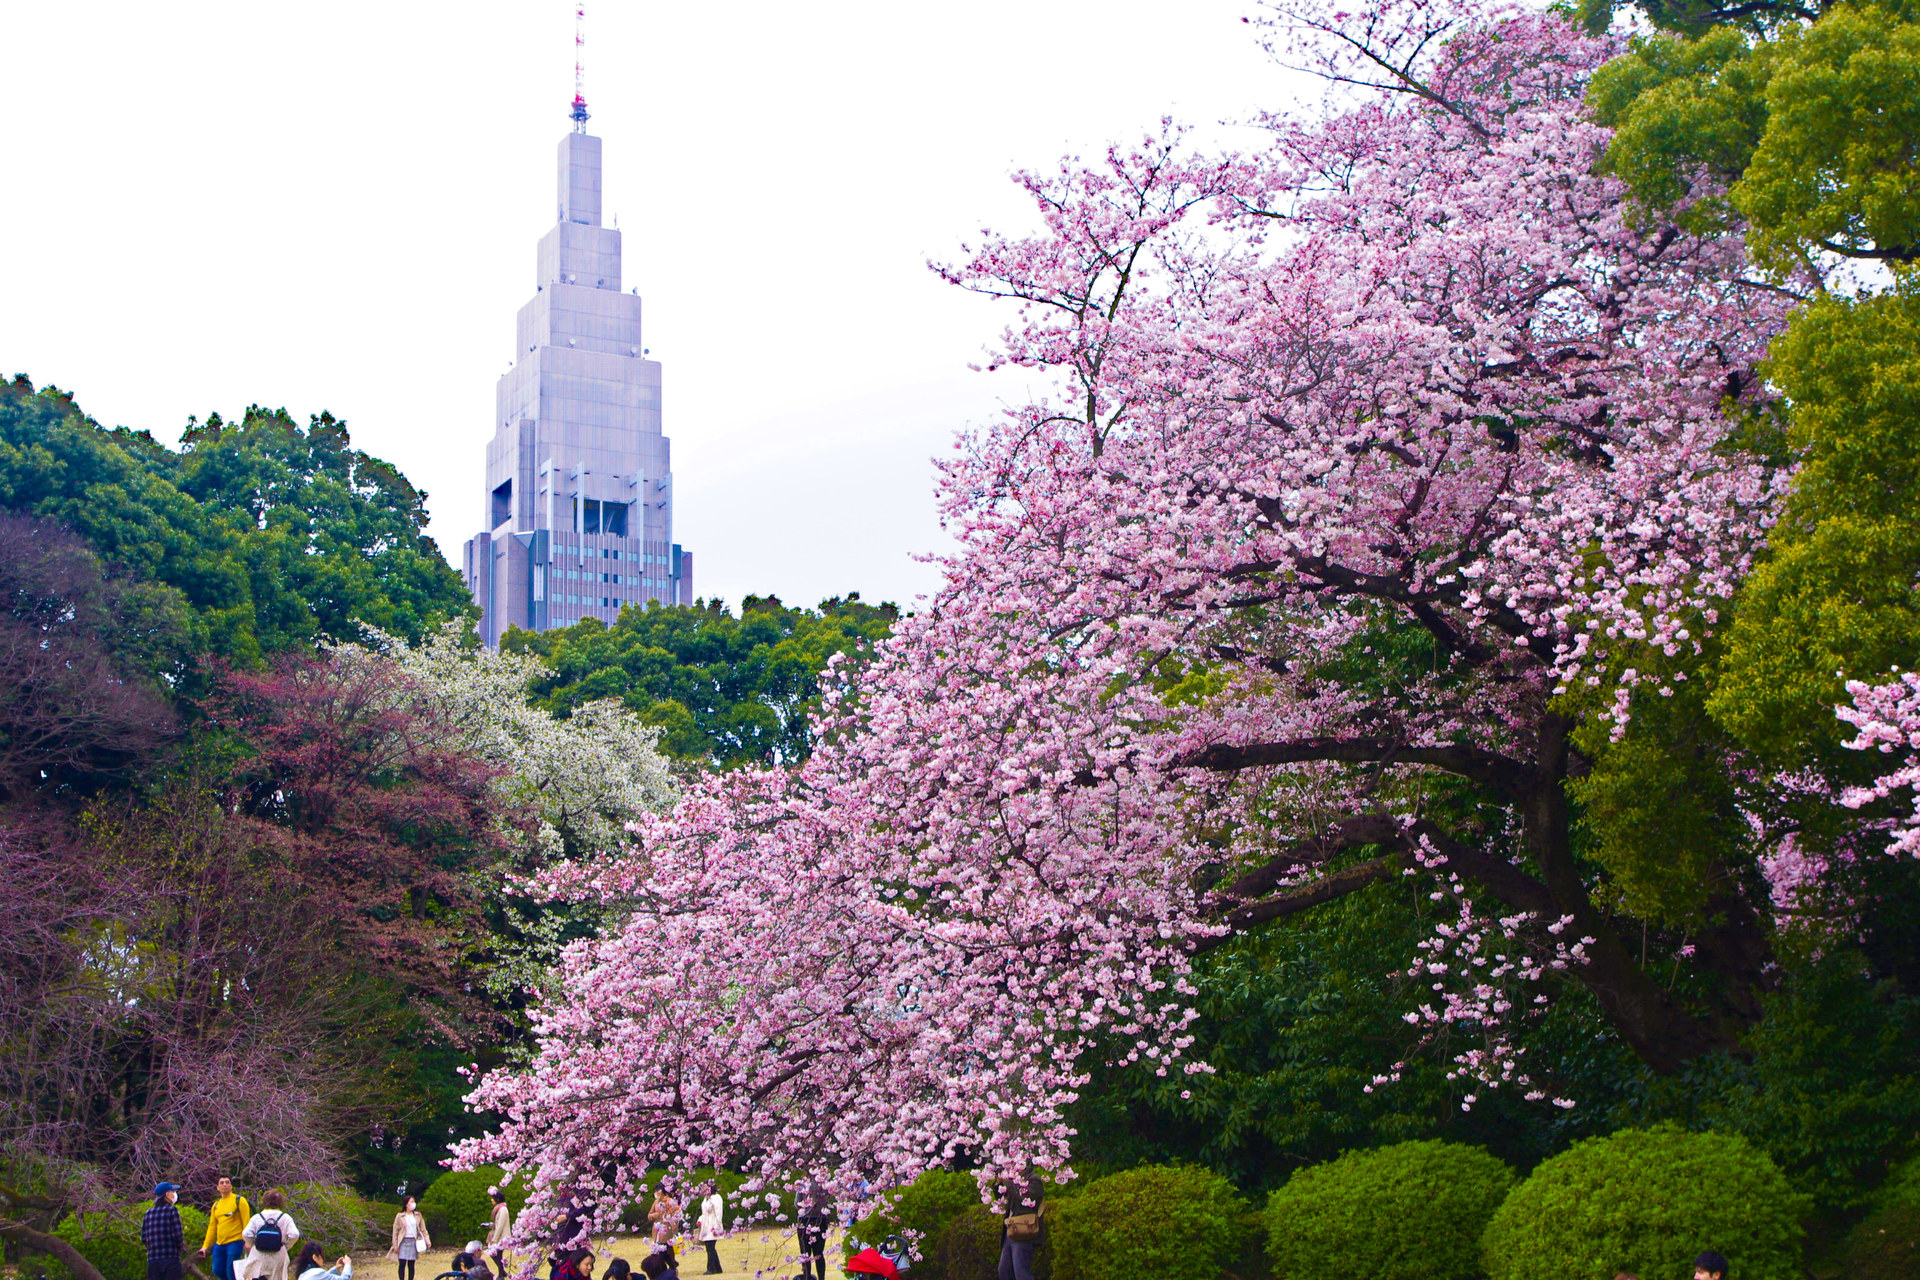 日本の風景 新宿御苑 ドコモタワーと桜 壁紙19x1280 壁紙館